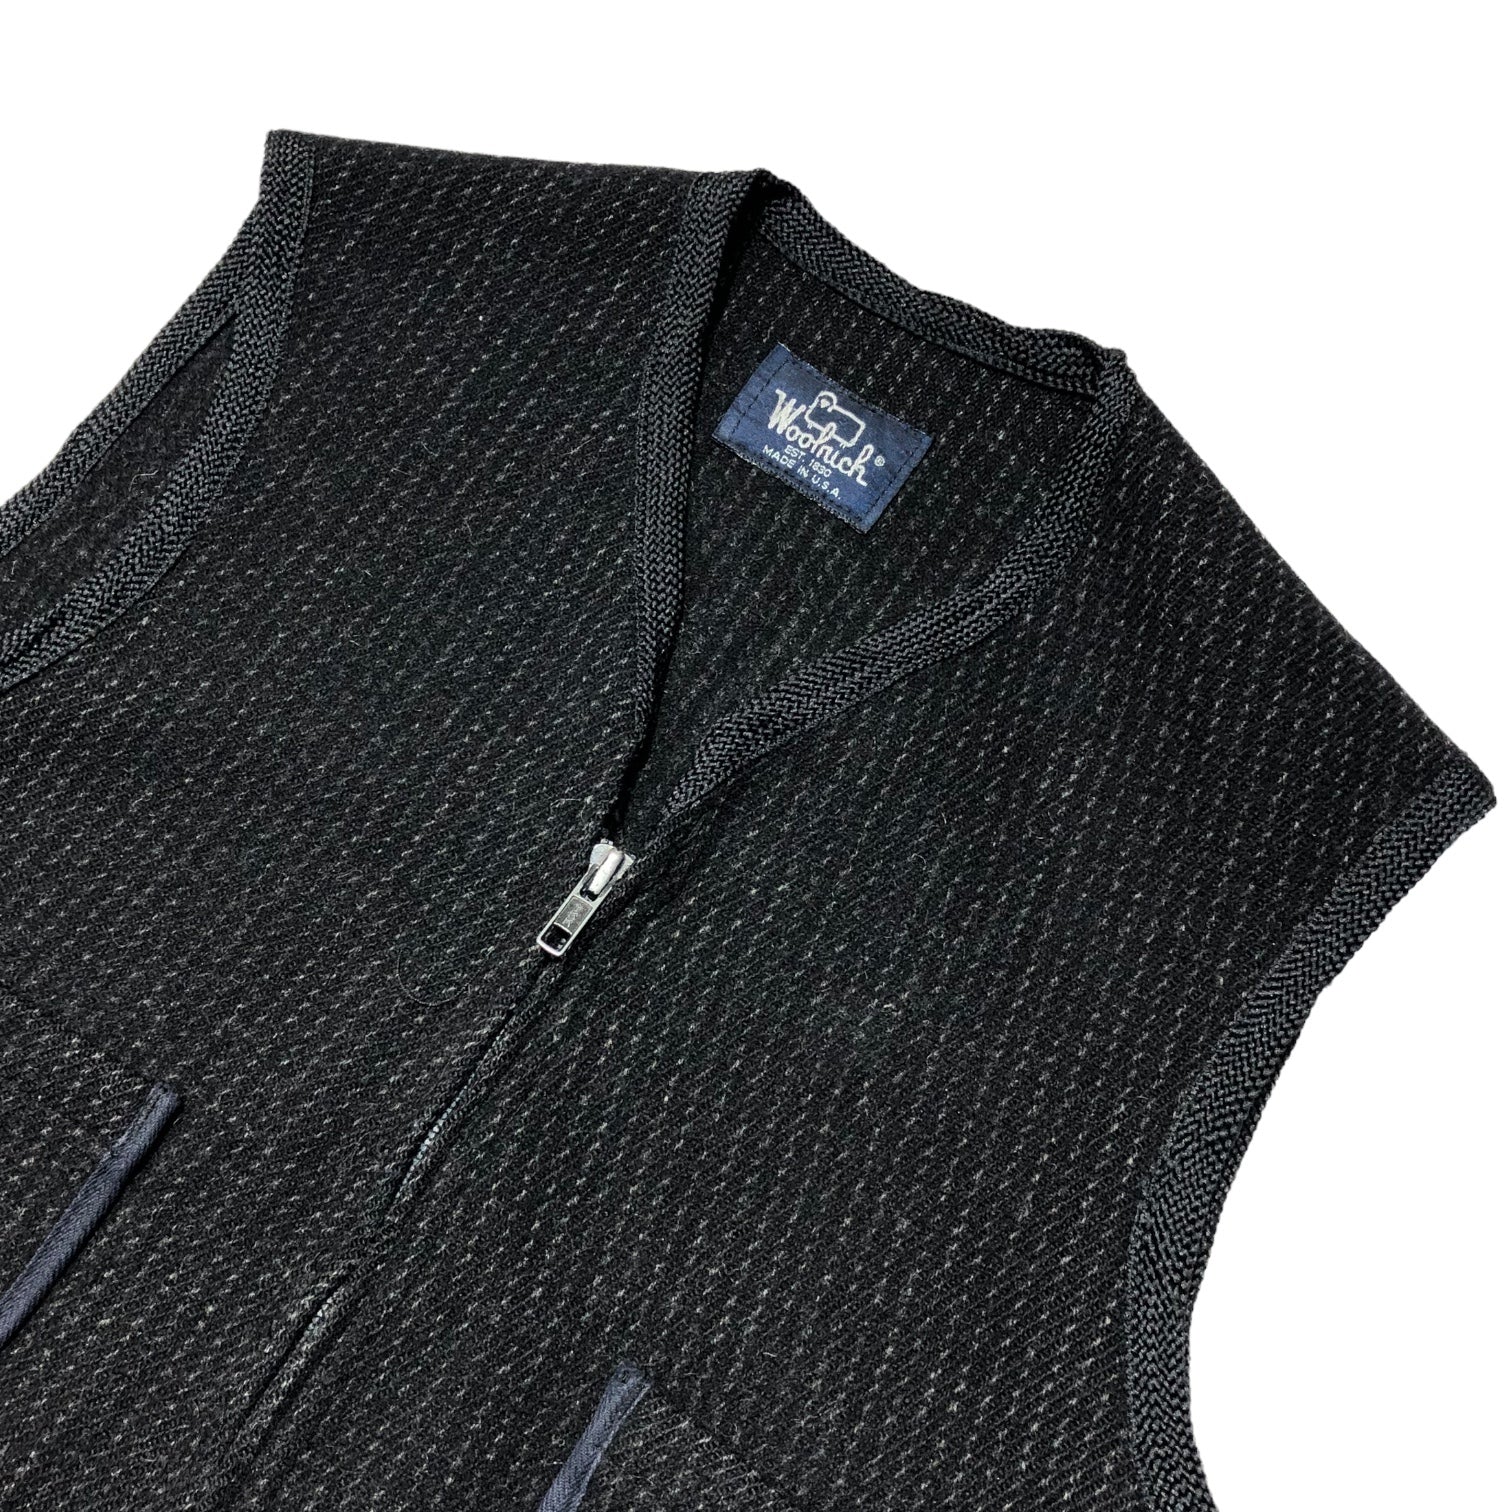 WOOLRICH(ウールリッチ) 80’s 4 pocket wool zip up vest 4ポケット ウール ジップ アップ ベスト 表記無し(M程度) グレー 80年代 USA製 ストライプ ヴィンテージ